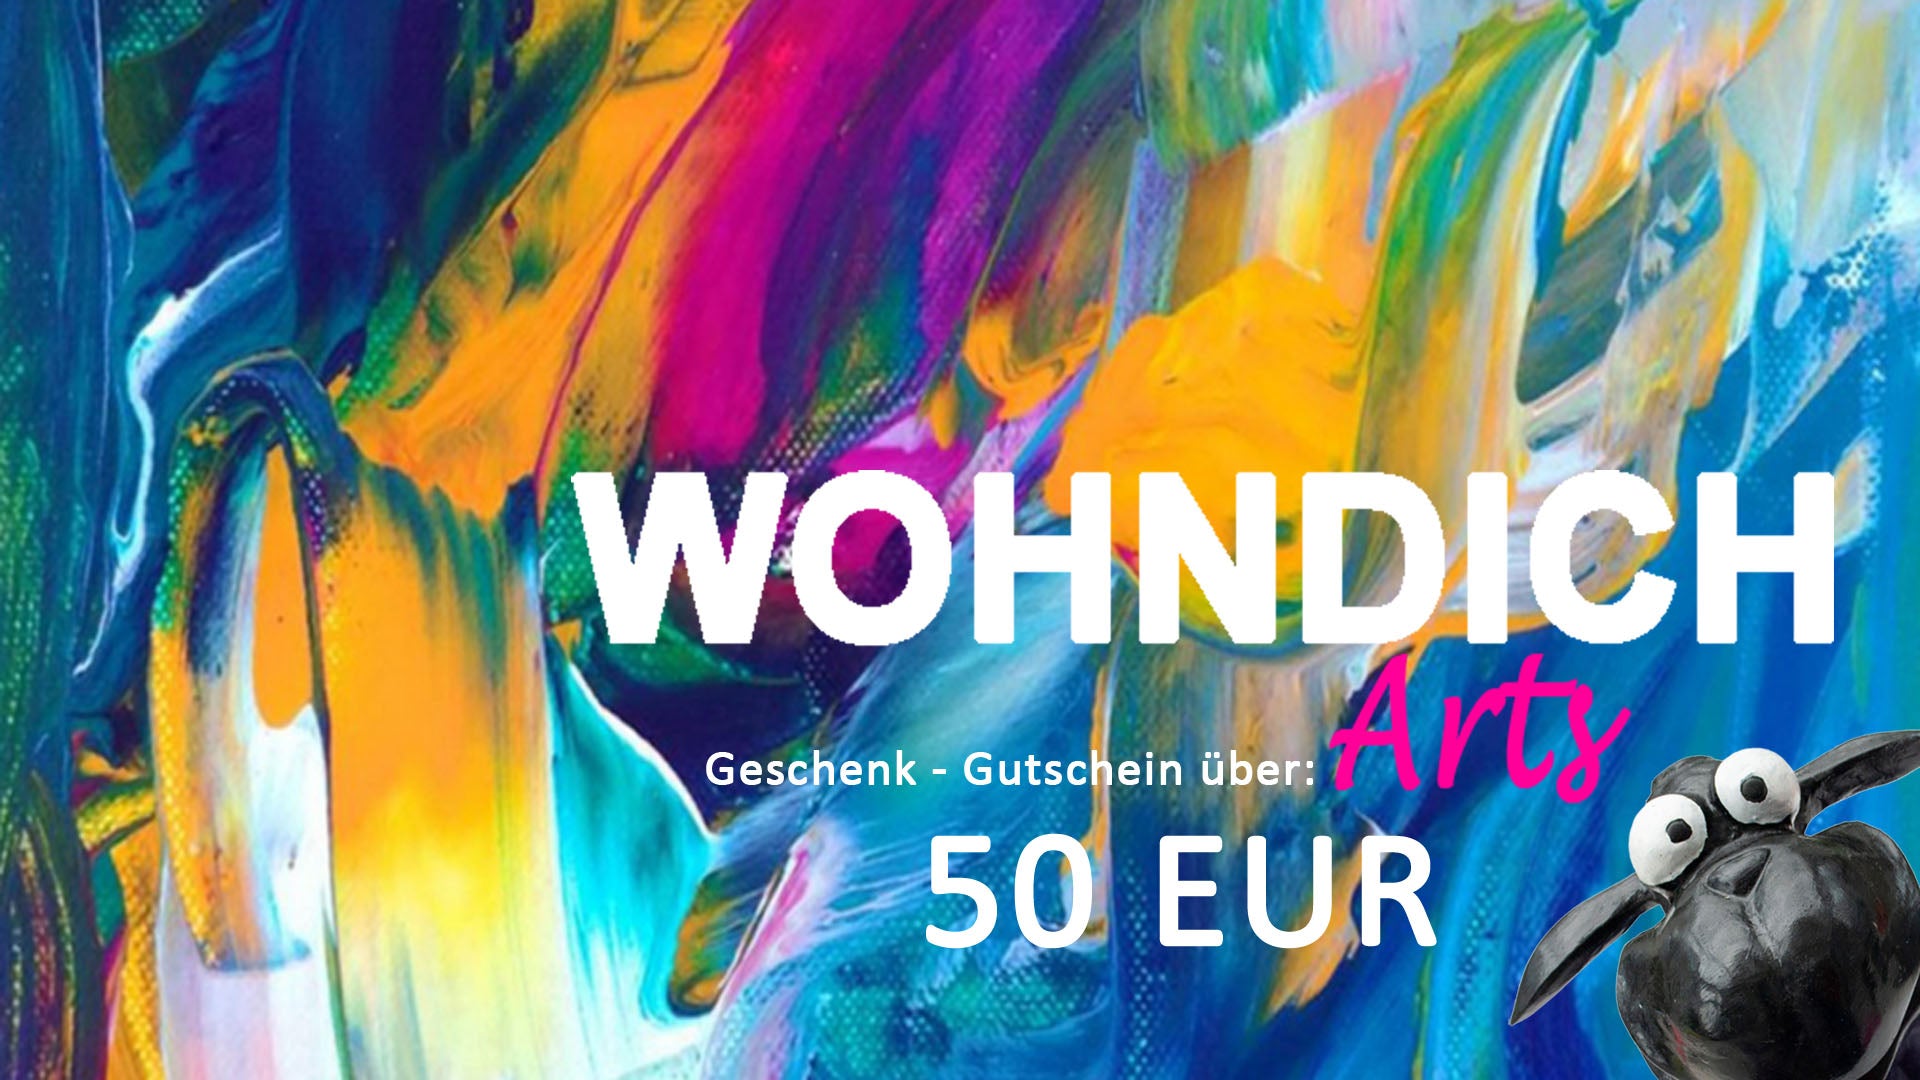 Geschenkgutschein 50 EUR, WohnDich Arts . Schwarzes Schaf, abstrakte Kunst